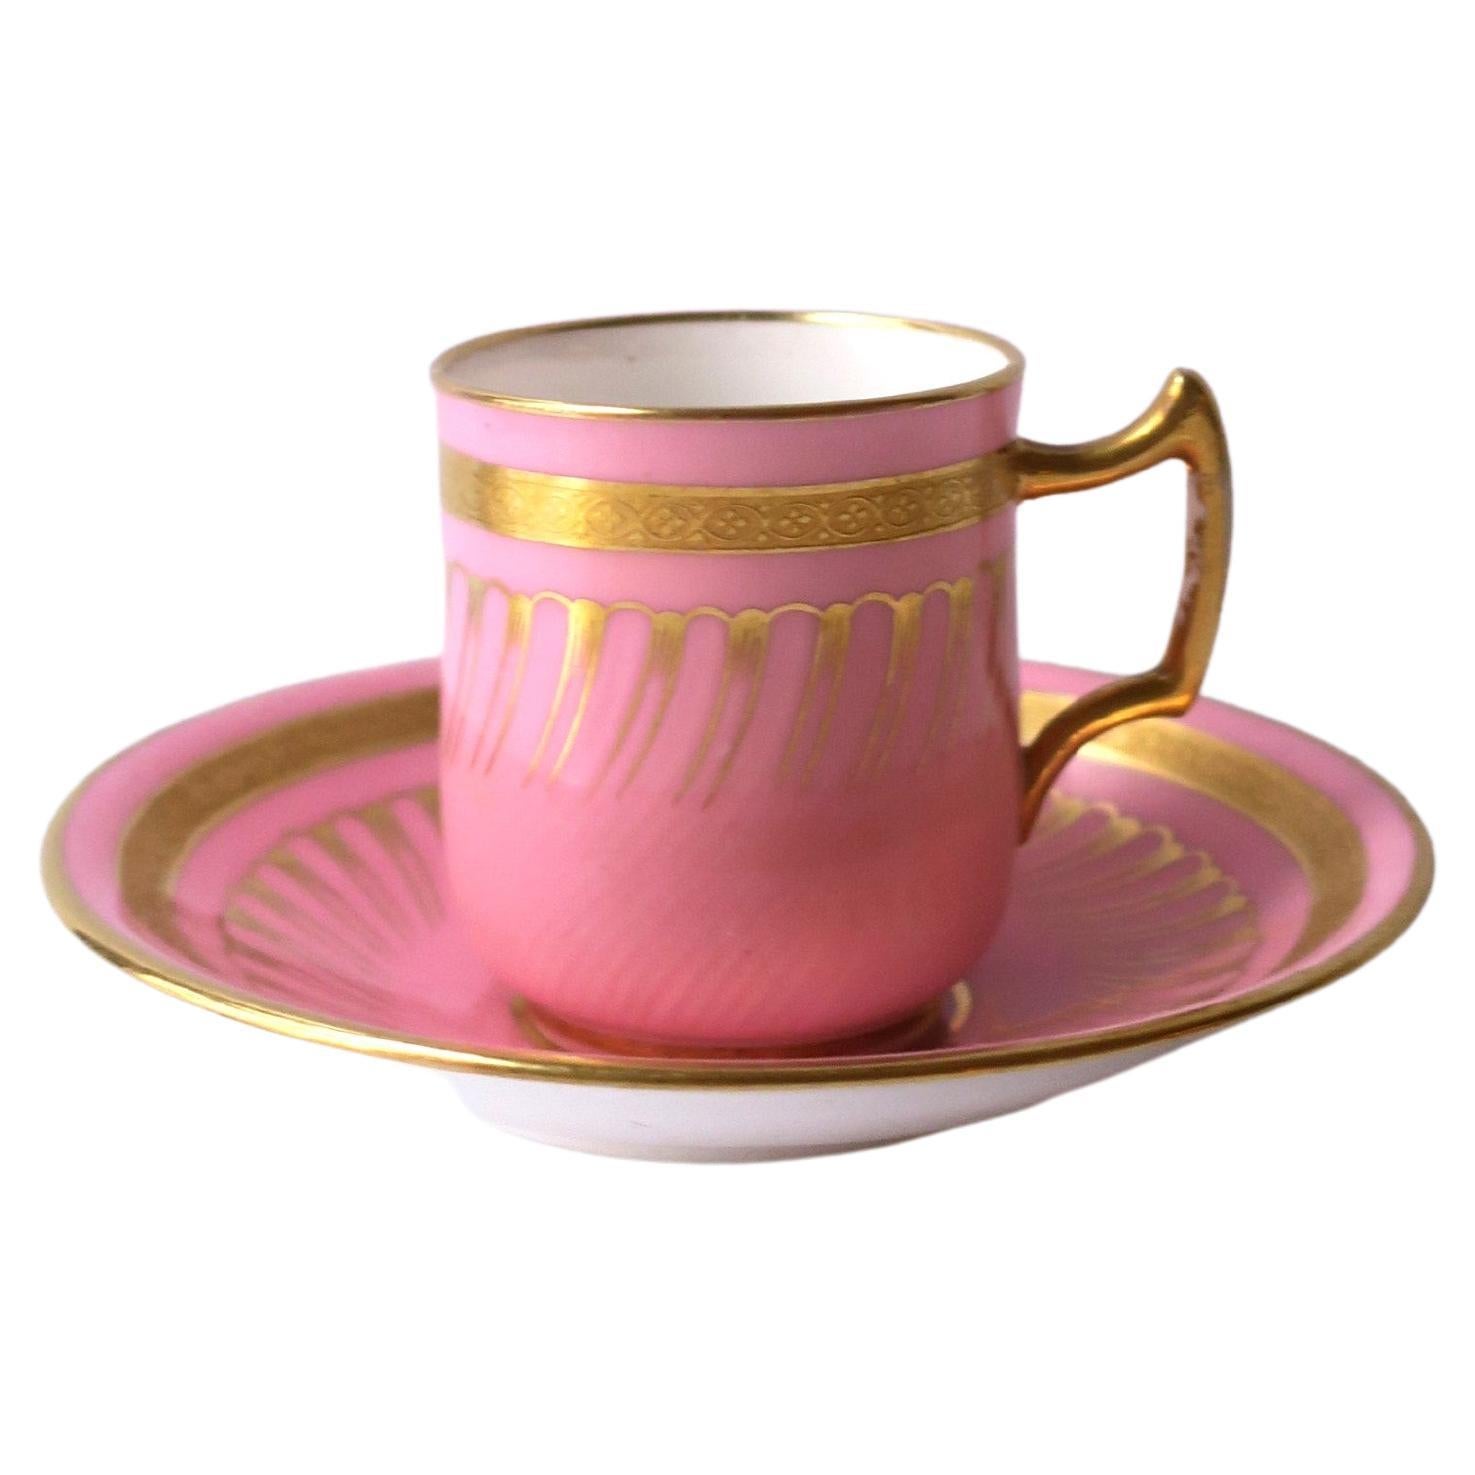 Englischer Minton-Couchtisch und Untertasse aus rosa und goldenem Porzellan, 19. Jahrhundert